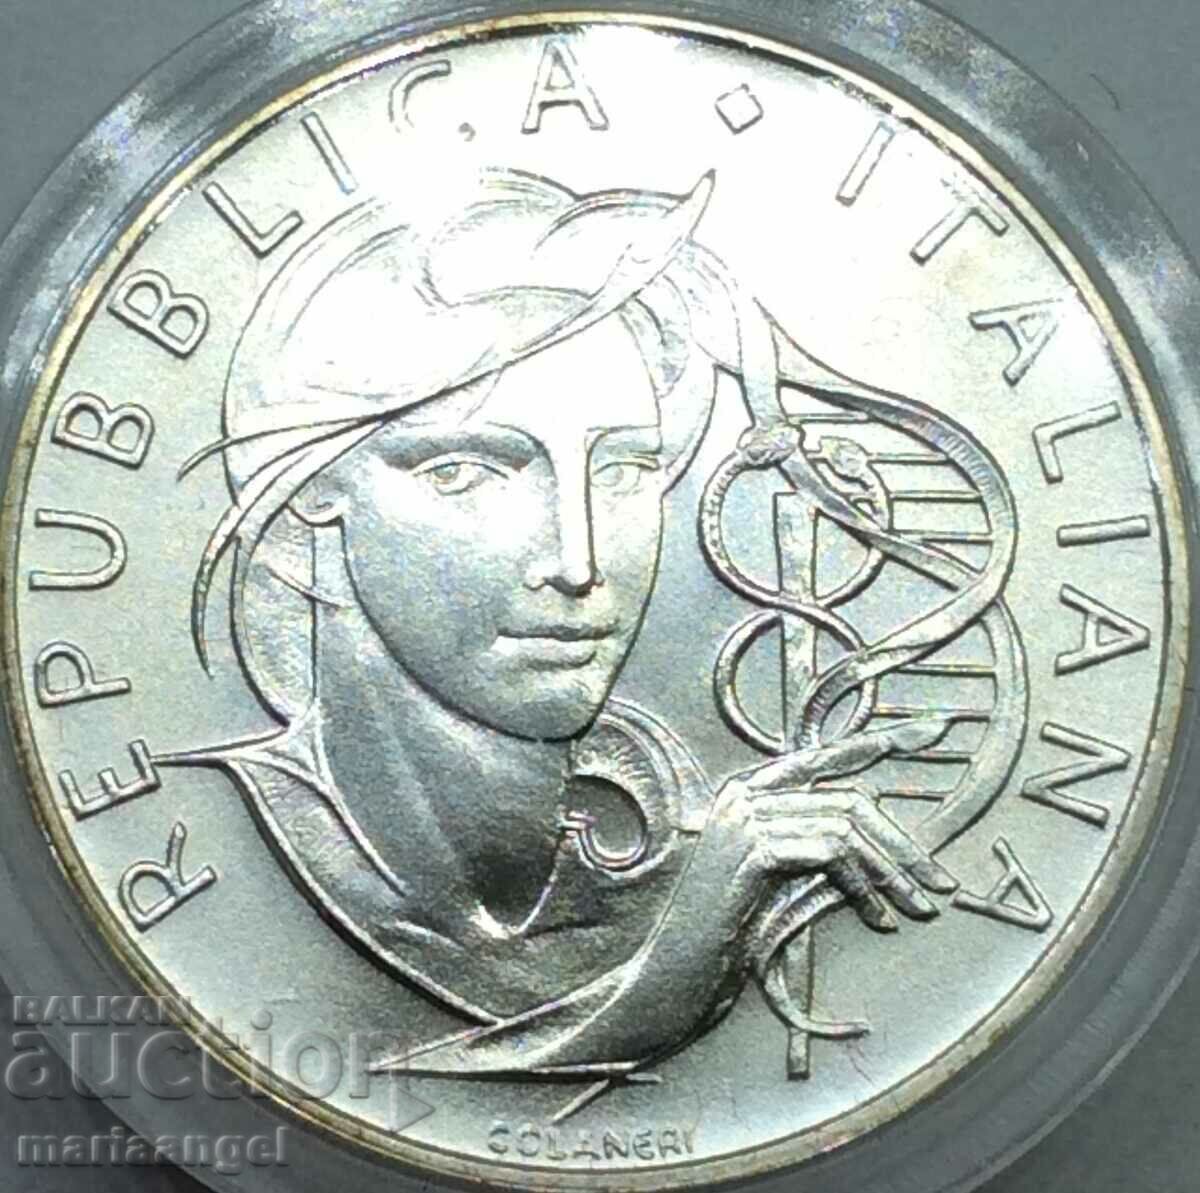 500 lire 1989 Italy certif. UNC capsule box silver